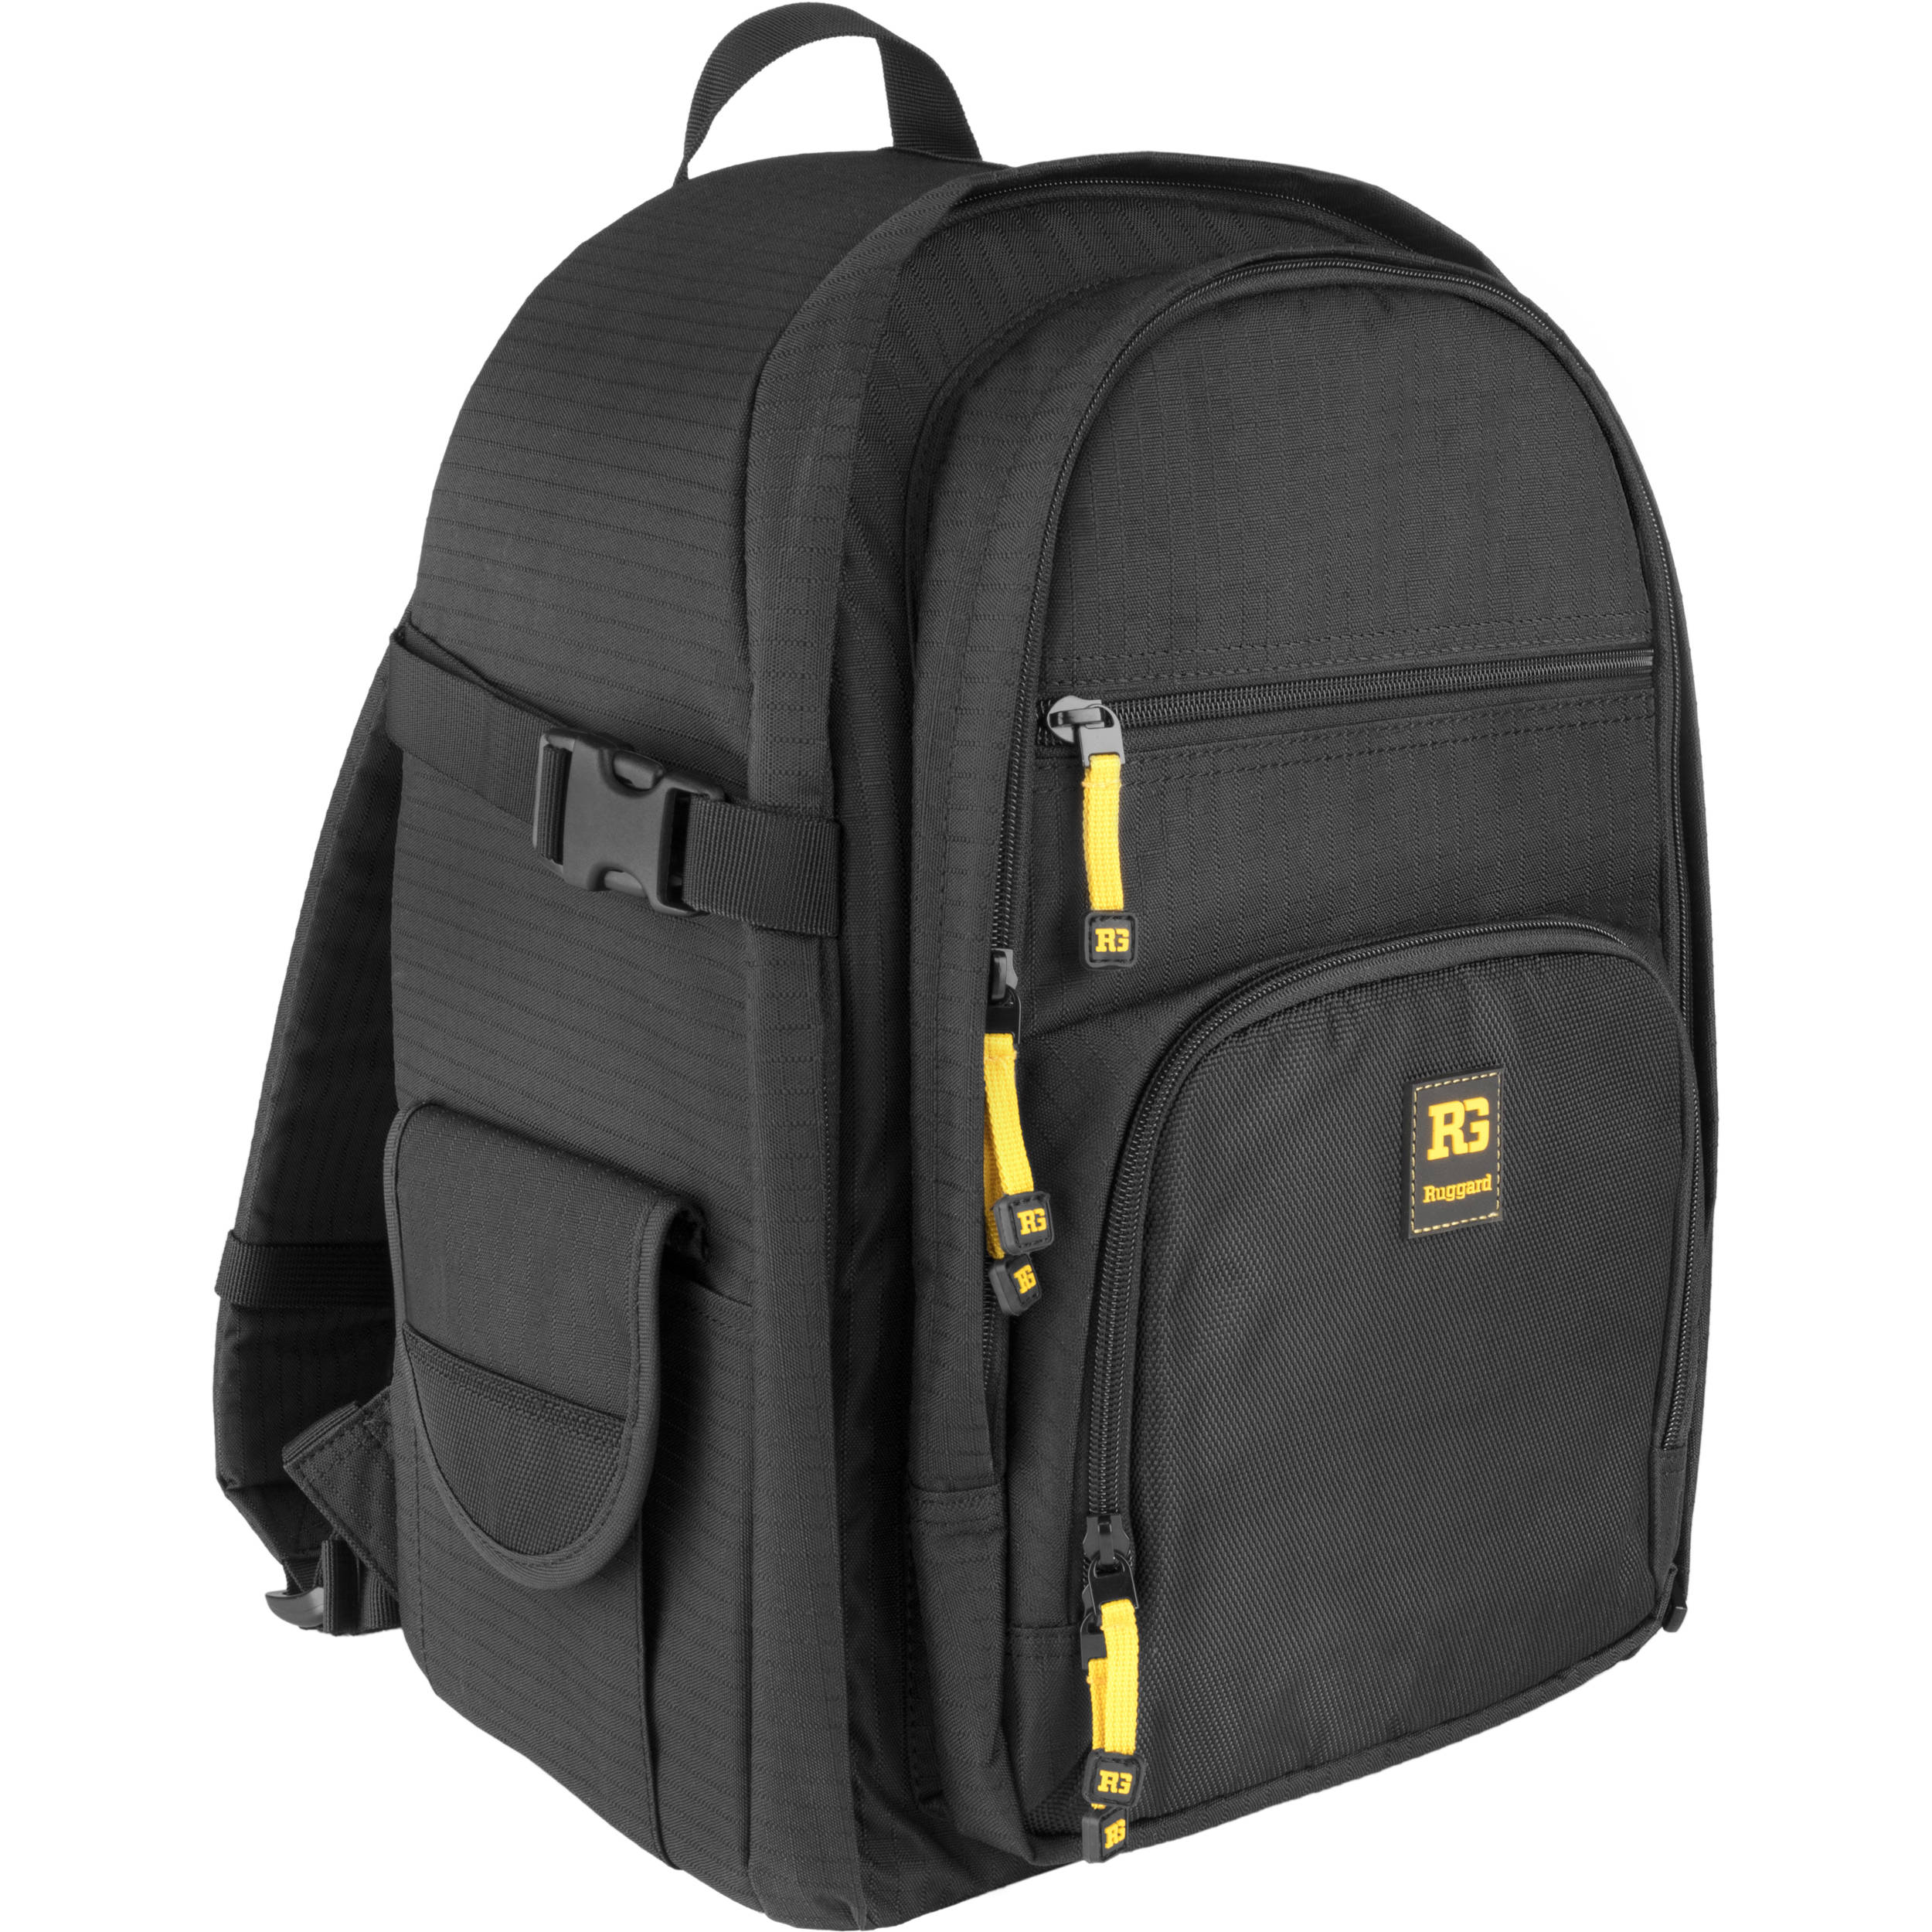 rugged camera backpack